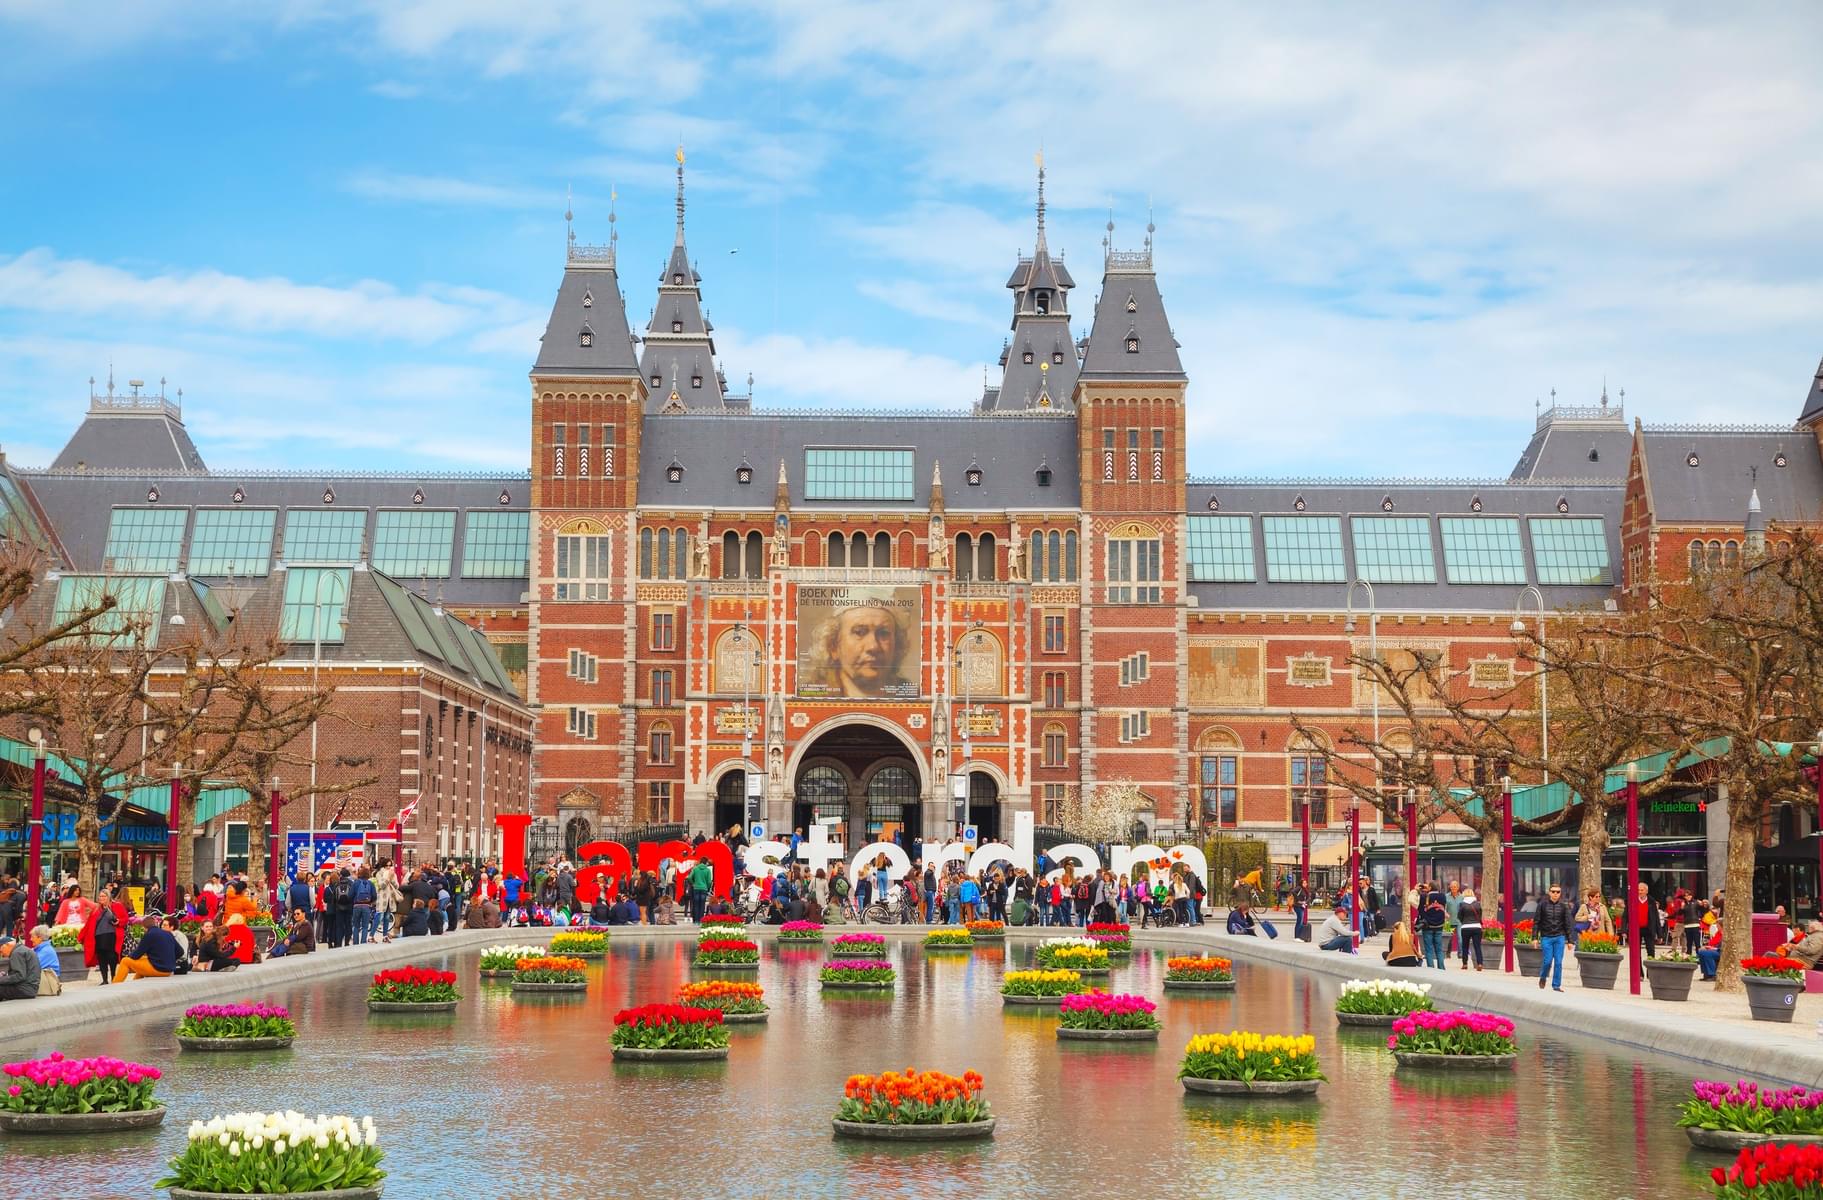 Architecture of Rijksmuseum Amsterdam